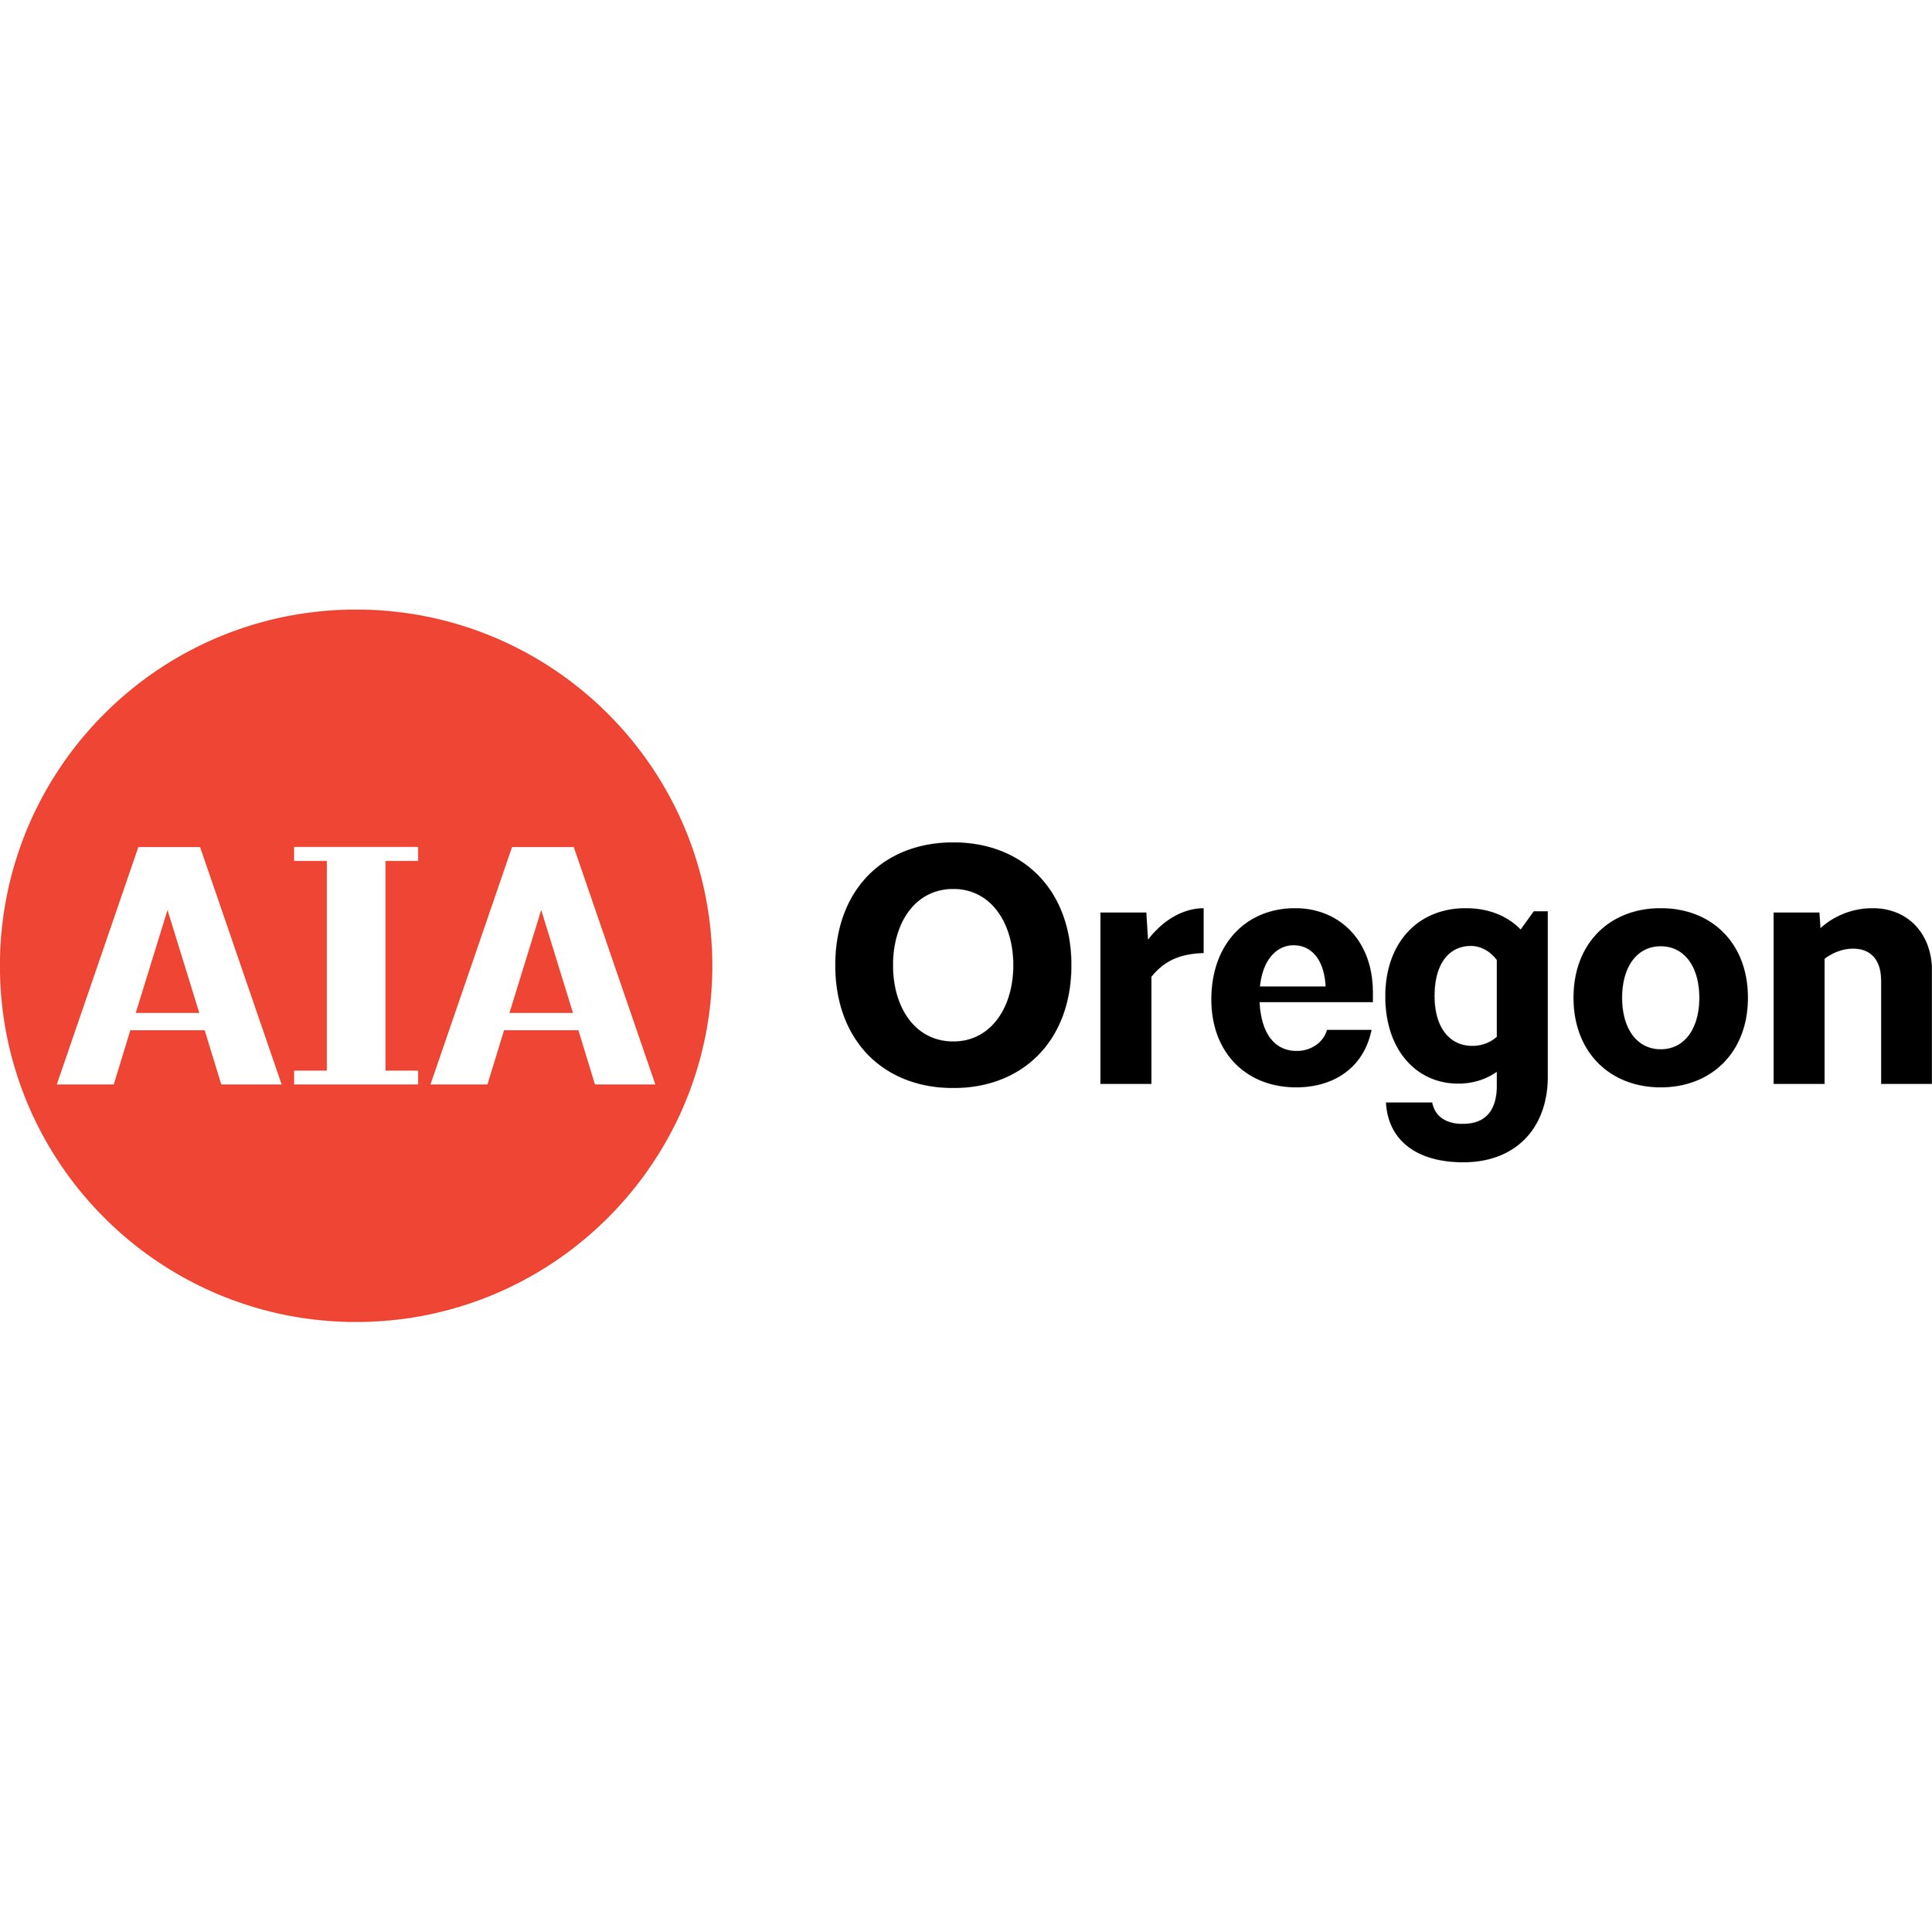 AIA-Oregon_RED-BLACK_RGB Square.jpg